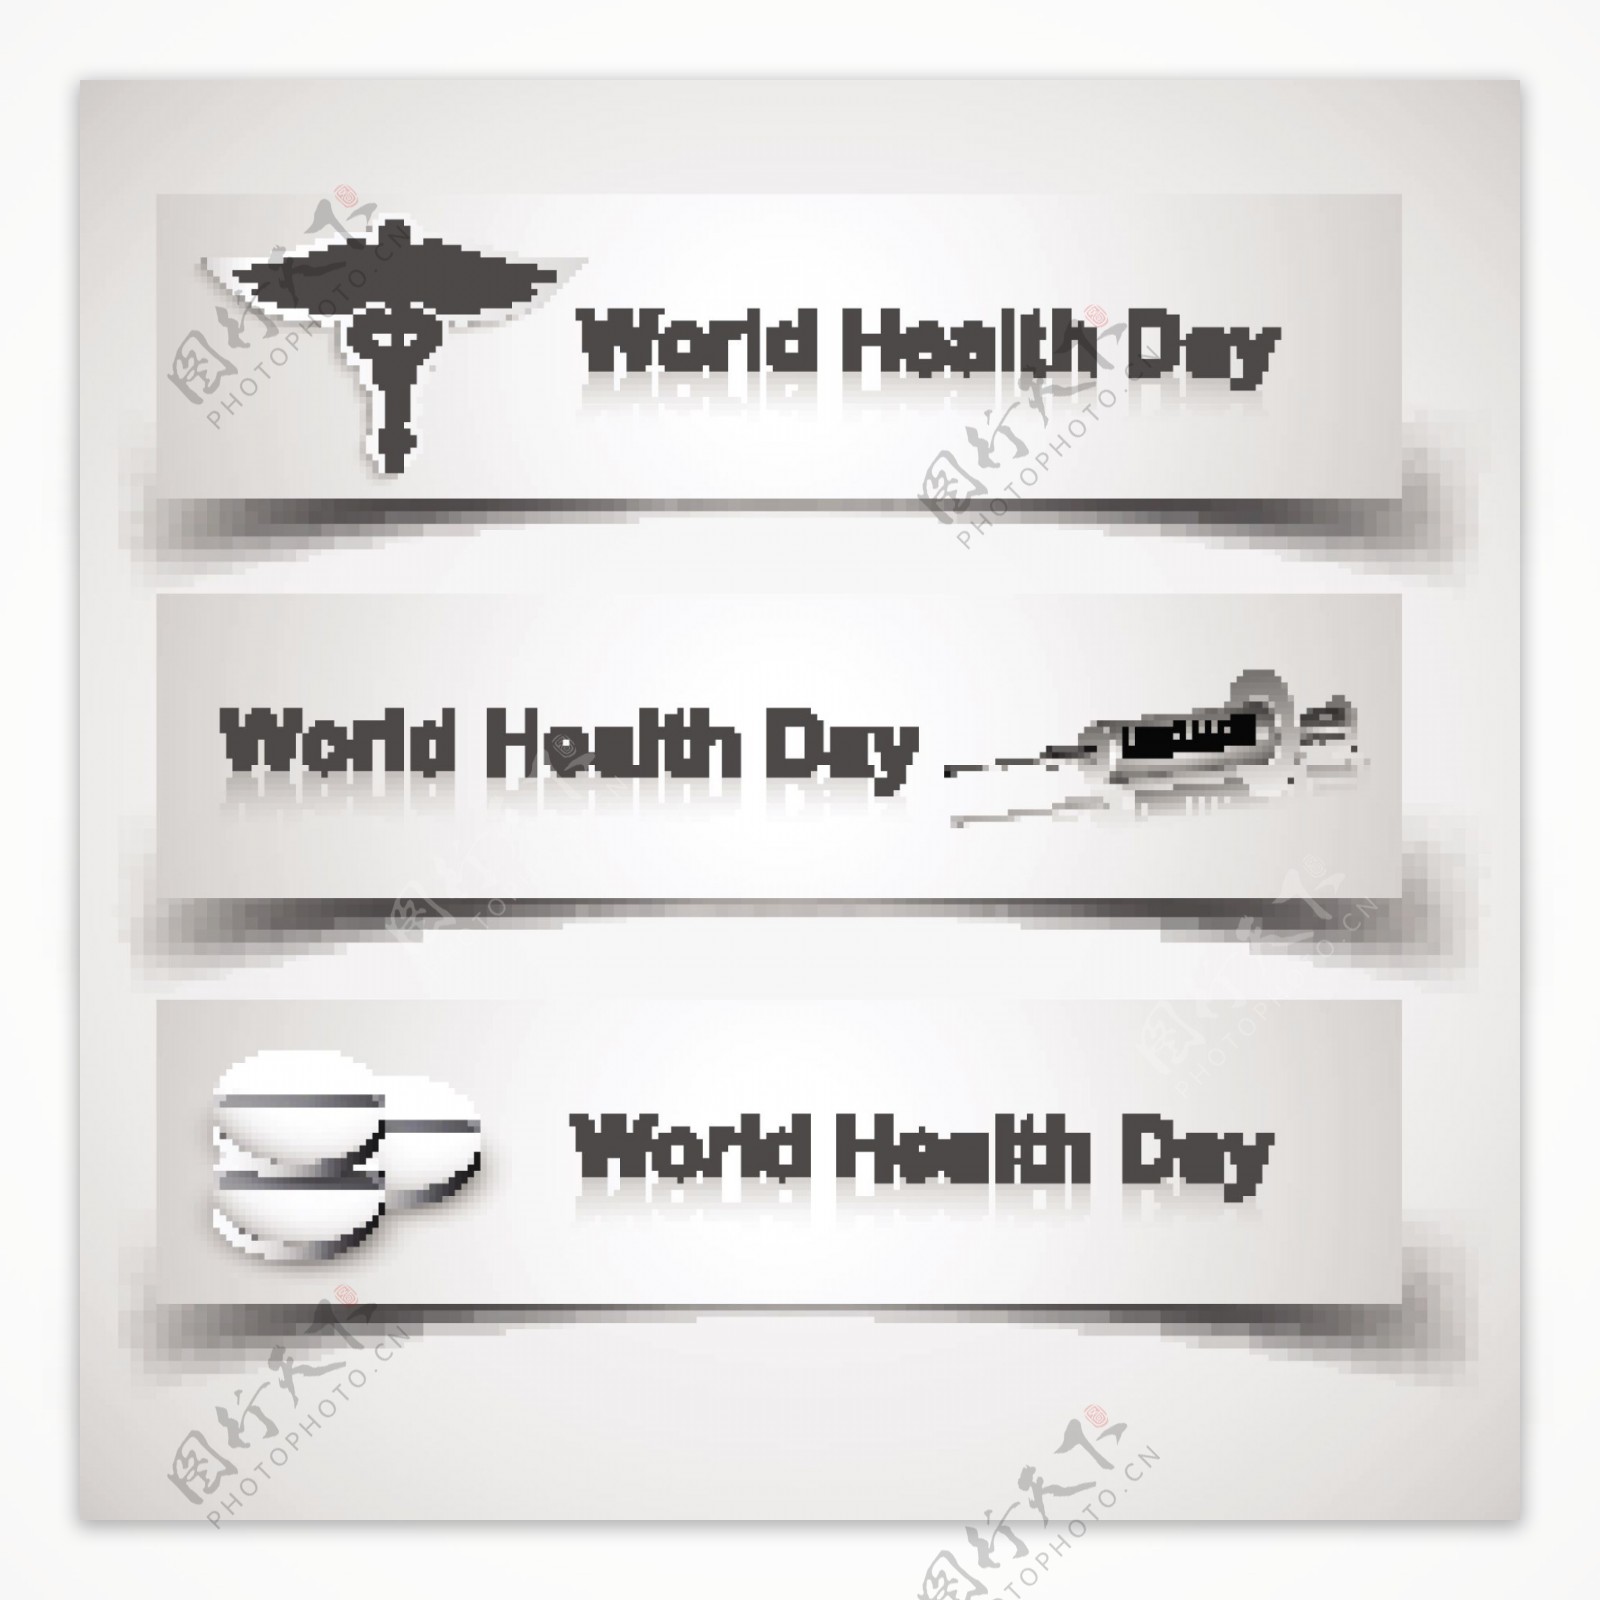 世界卫生日医疗概念